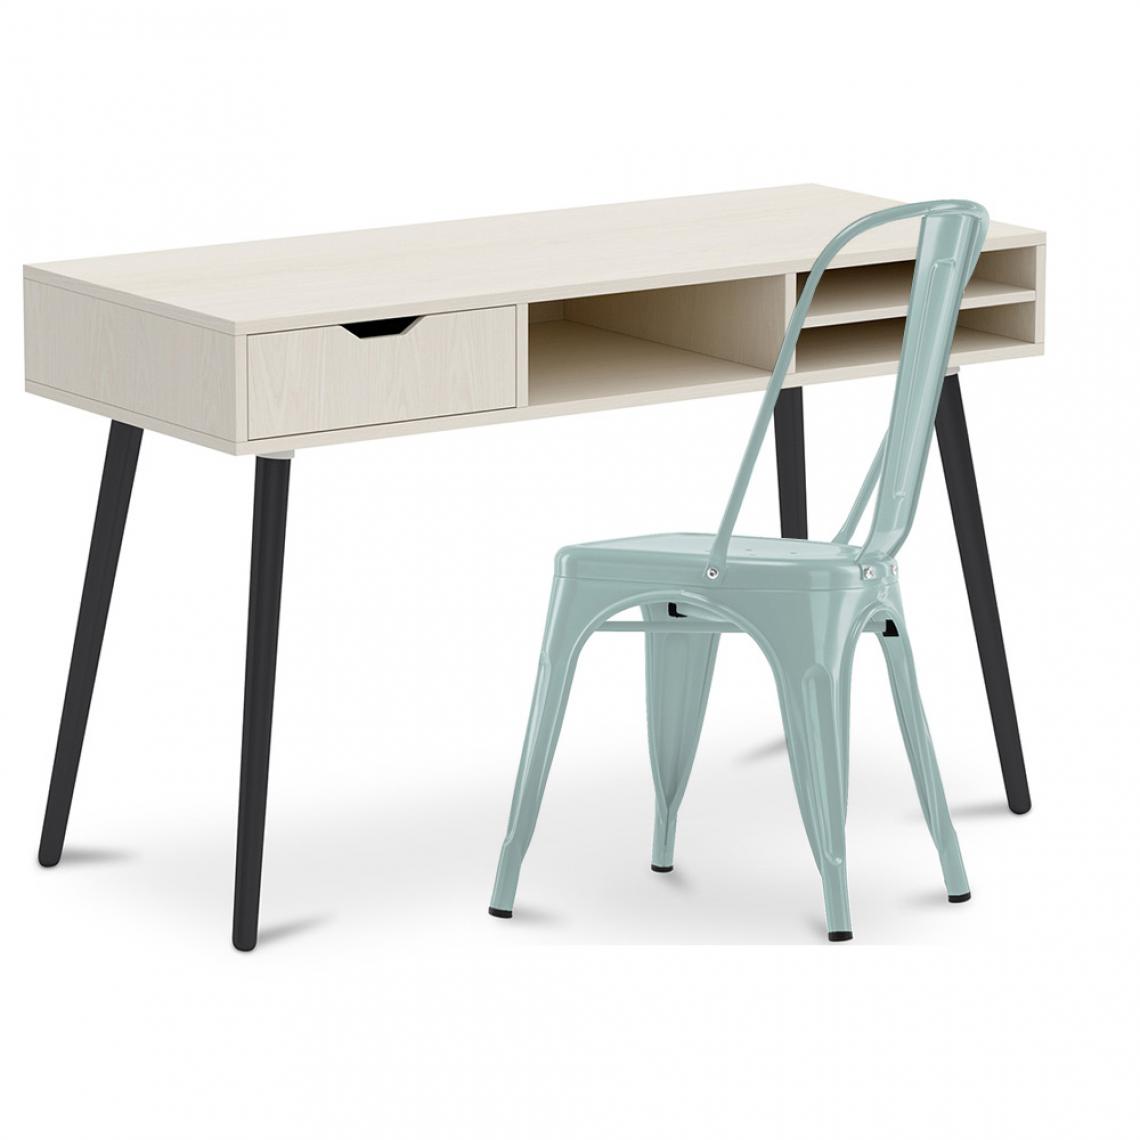 Iconik Interior - Bureau en bois Design style scandinave Beckett + Chaise Style Tolix 5Kgs Nouvelle édition Métal - Bureaux